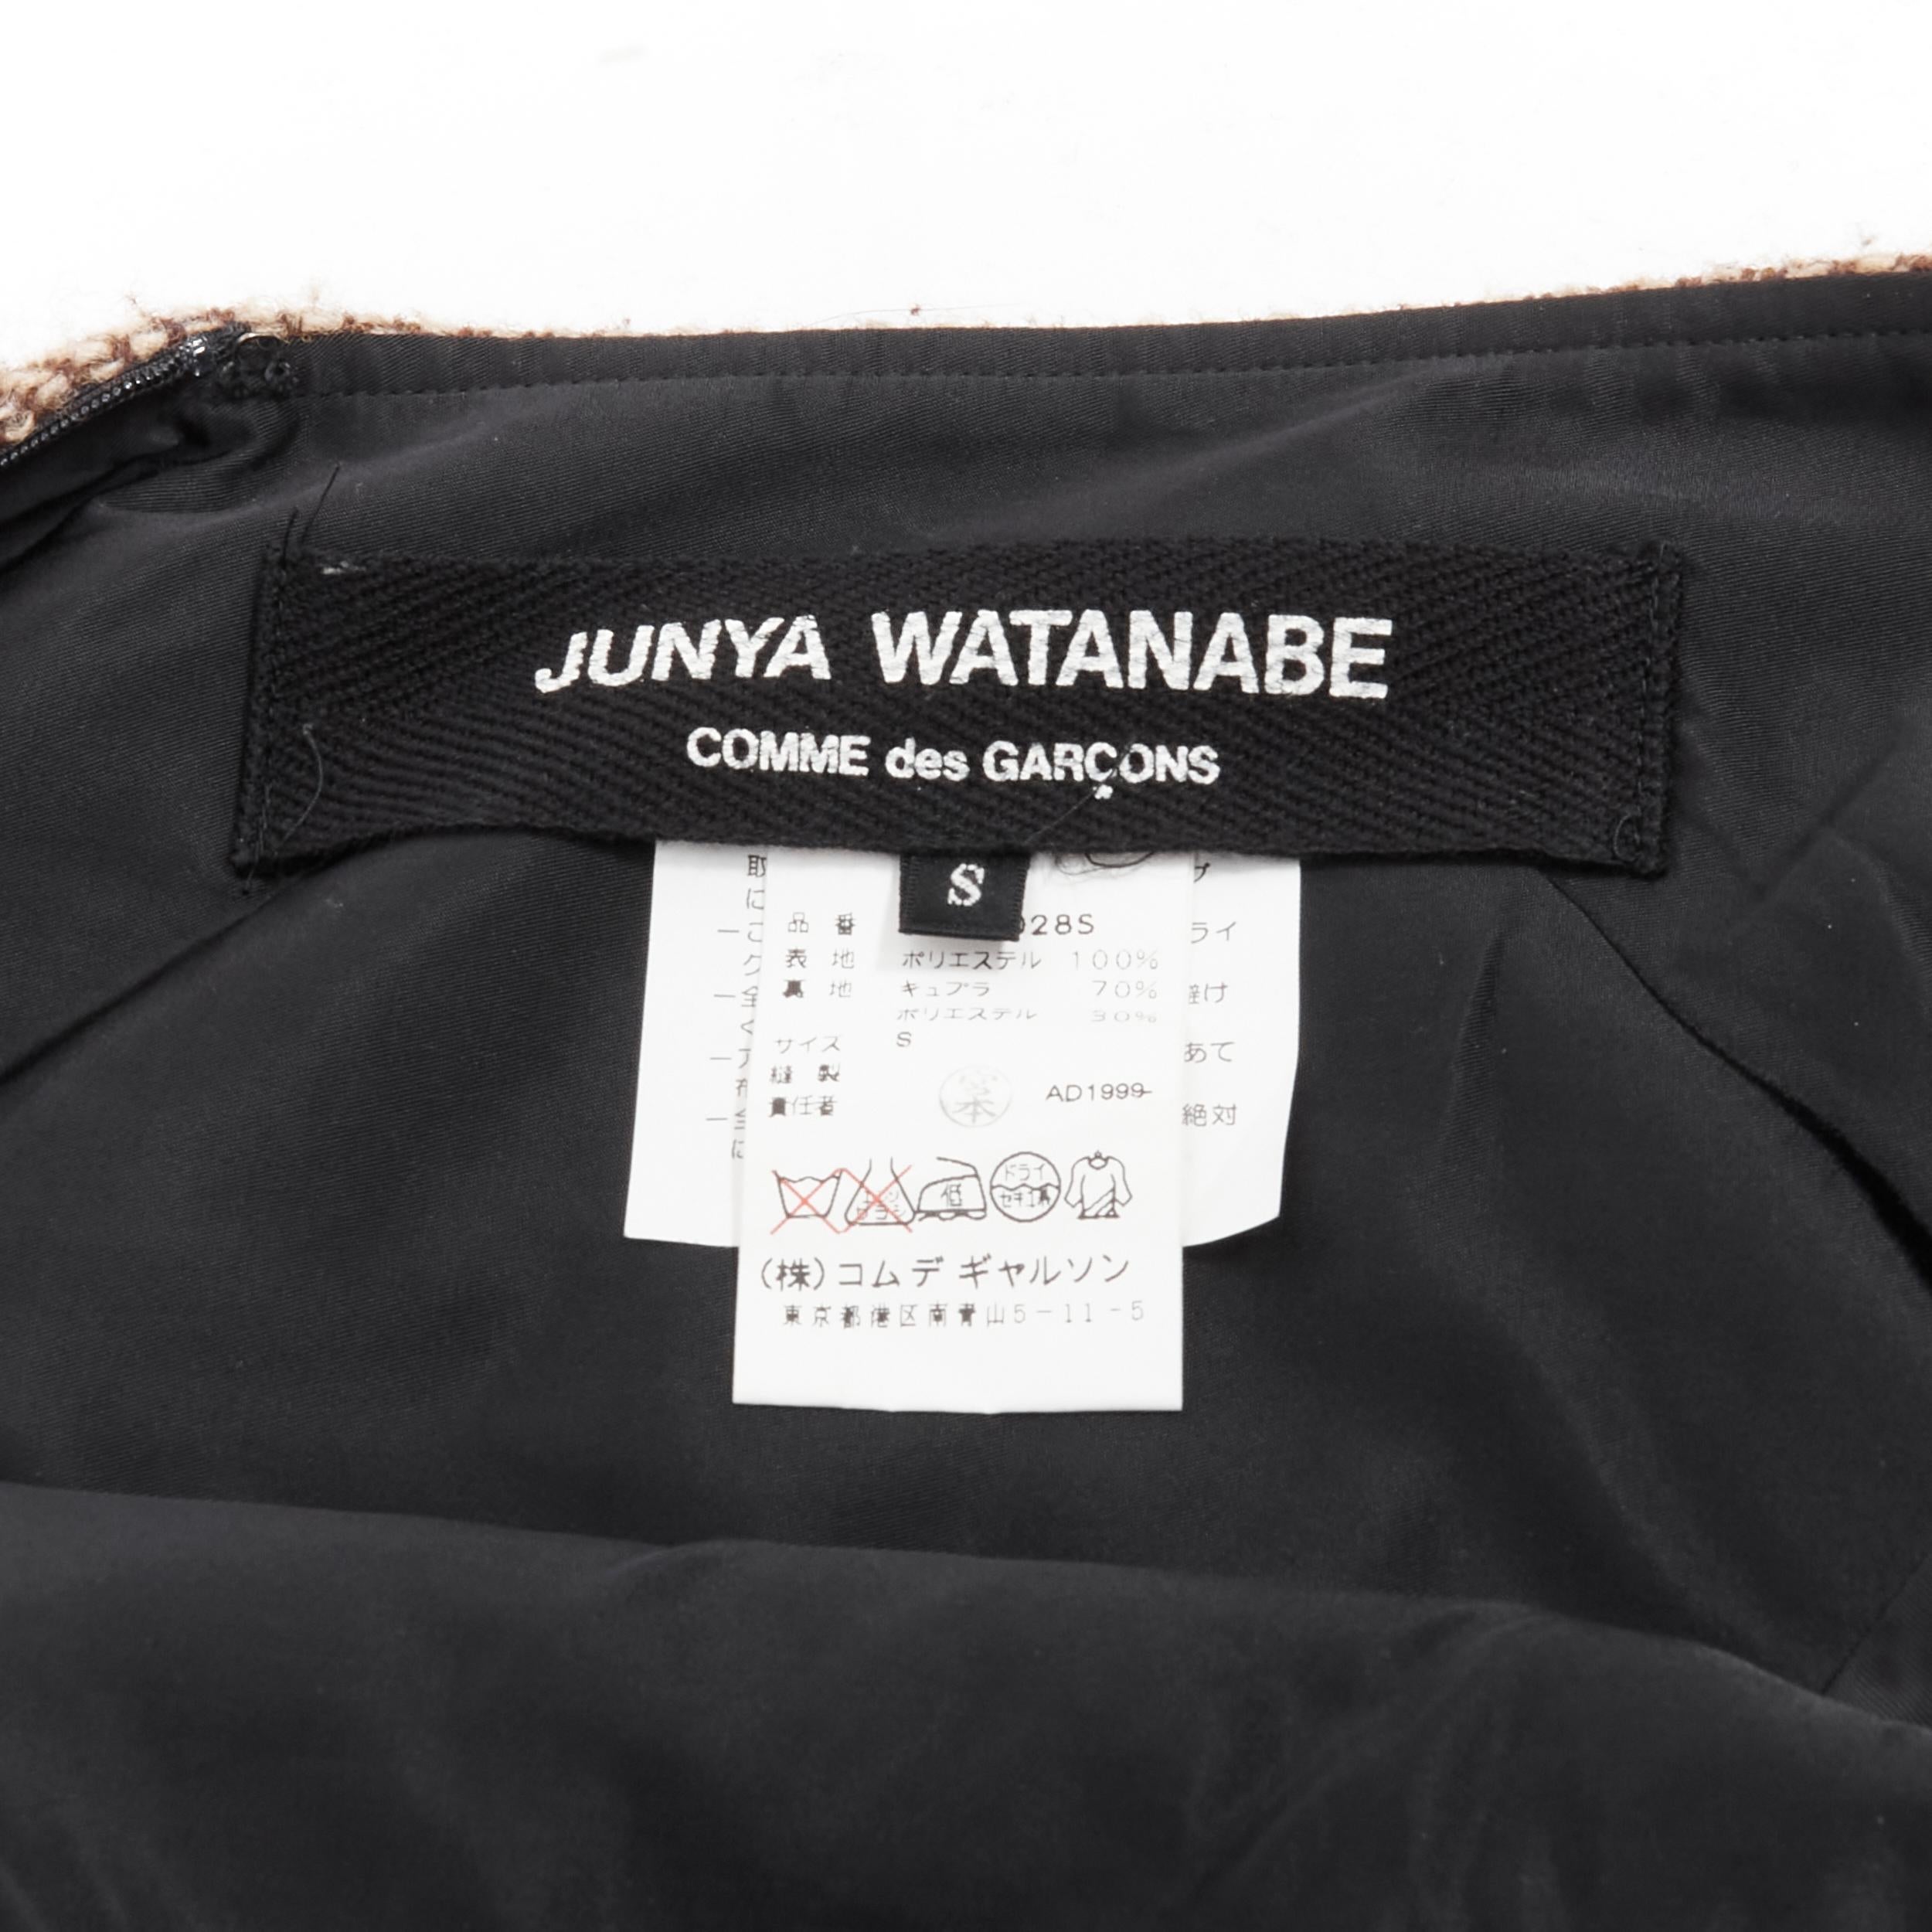 new JUNYA WATANABE 1999 brown herringbone tweed wrap bustle asymmetric skirt S 5